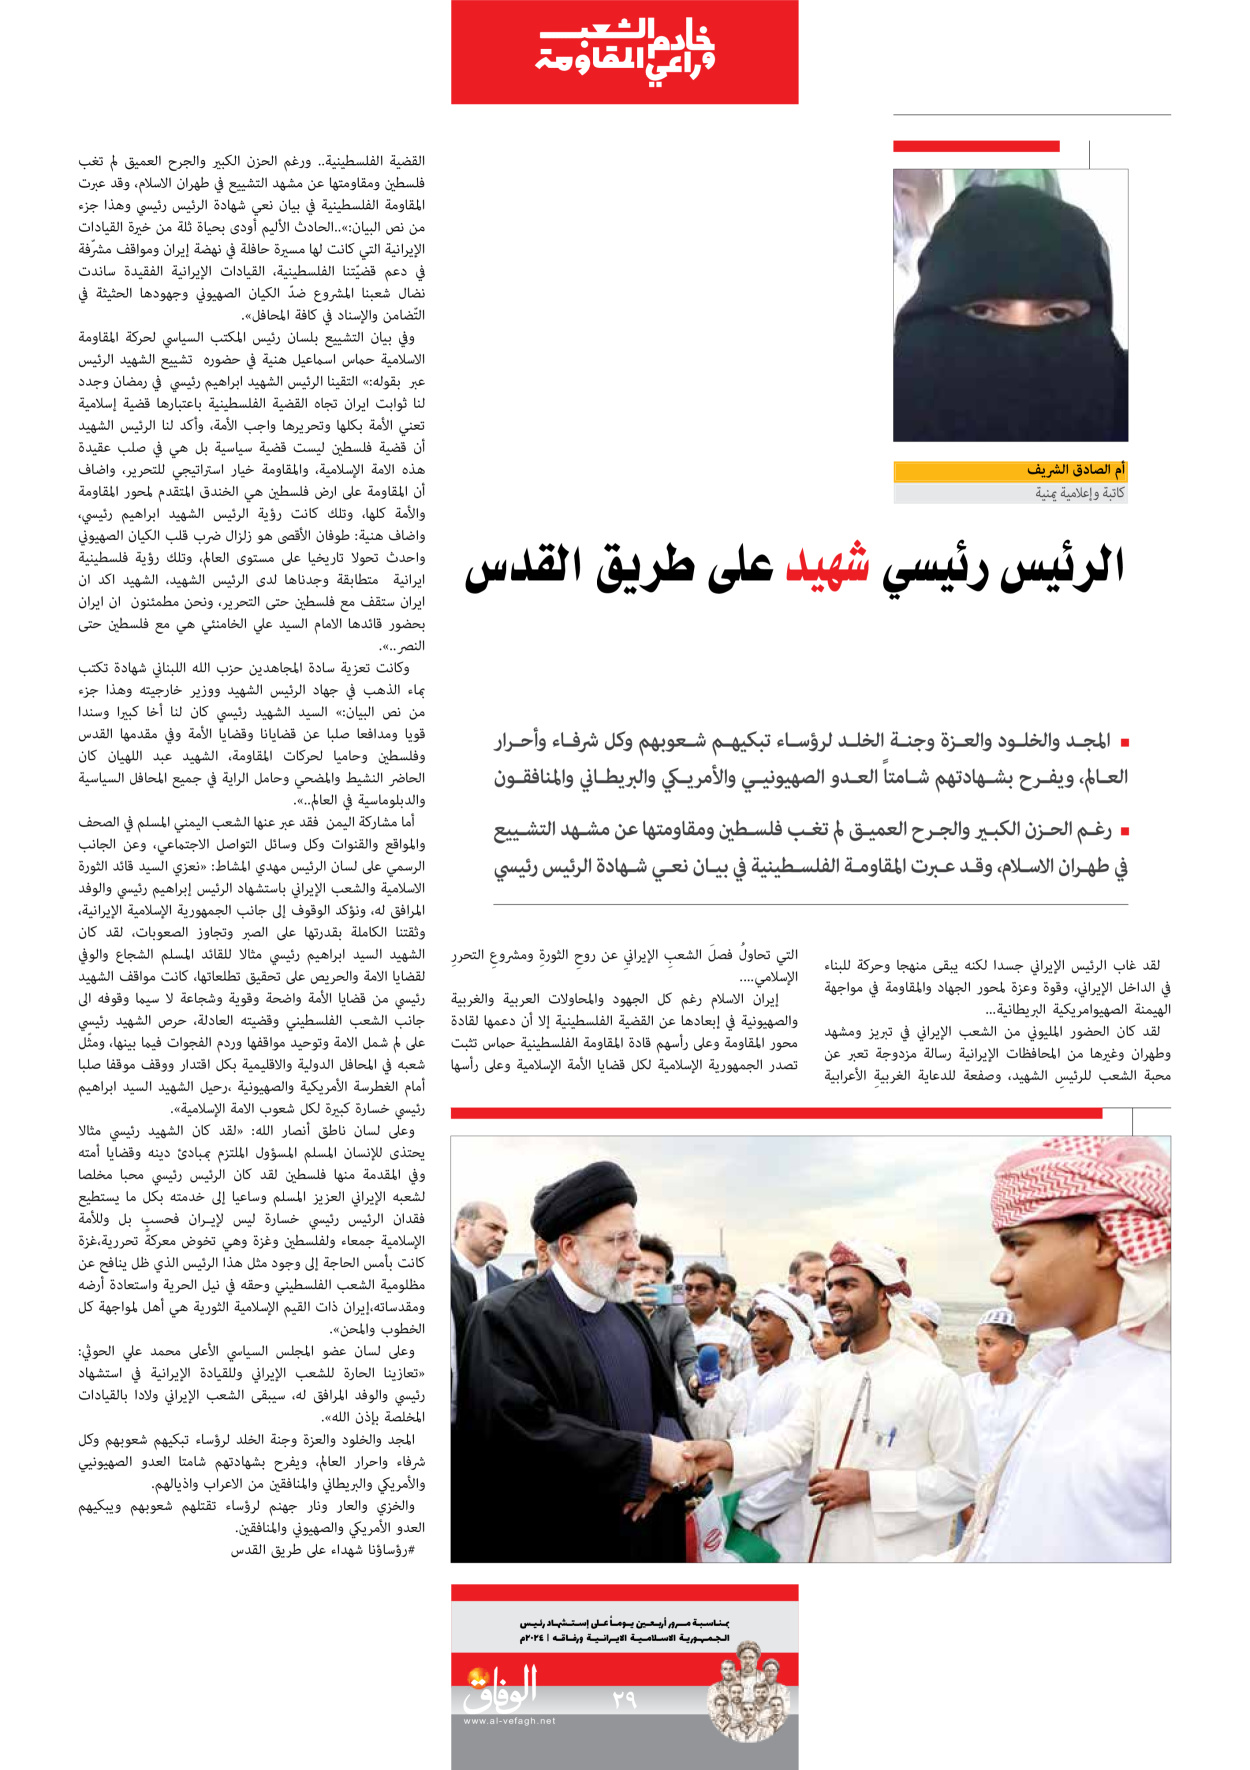 صحیفة ایران الدولیة الوفاق - ملحق ویژه نامه چهلم شهید رییسی - ٢٩ يونيو ٢٠٢٤ - الصفحة ۲۹